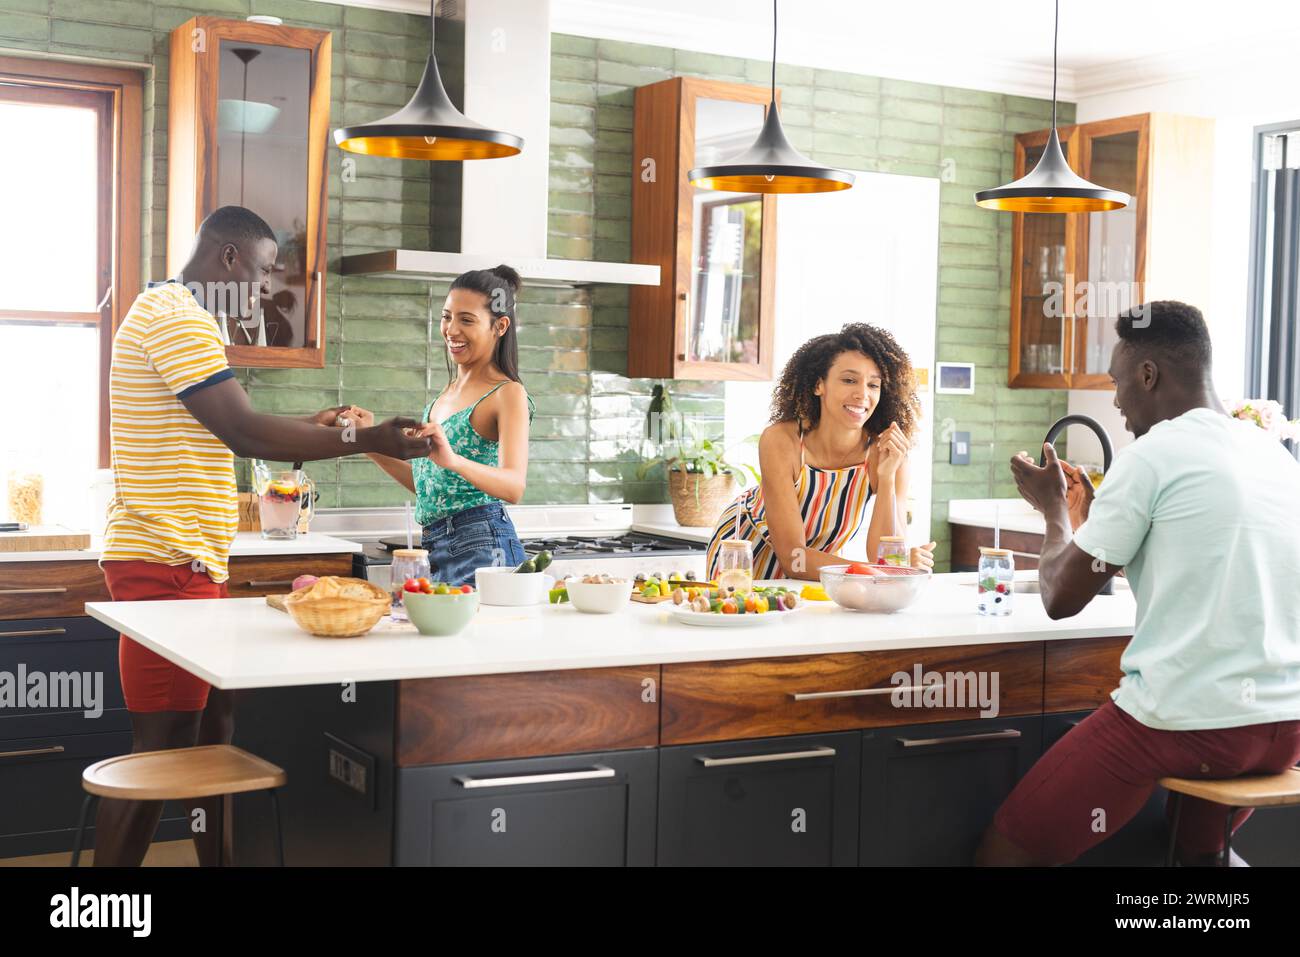 Eine vielfältige Gruppe genießt einen lebhaften Moment in einer modernen Küche Stockfoto